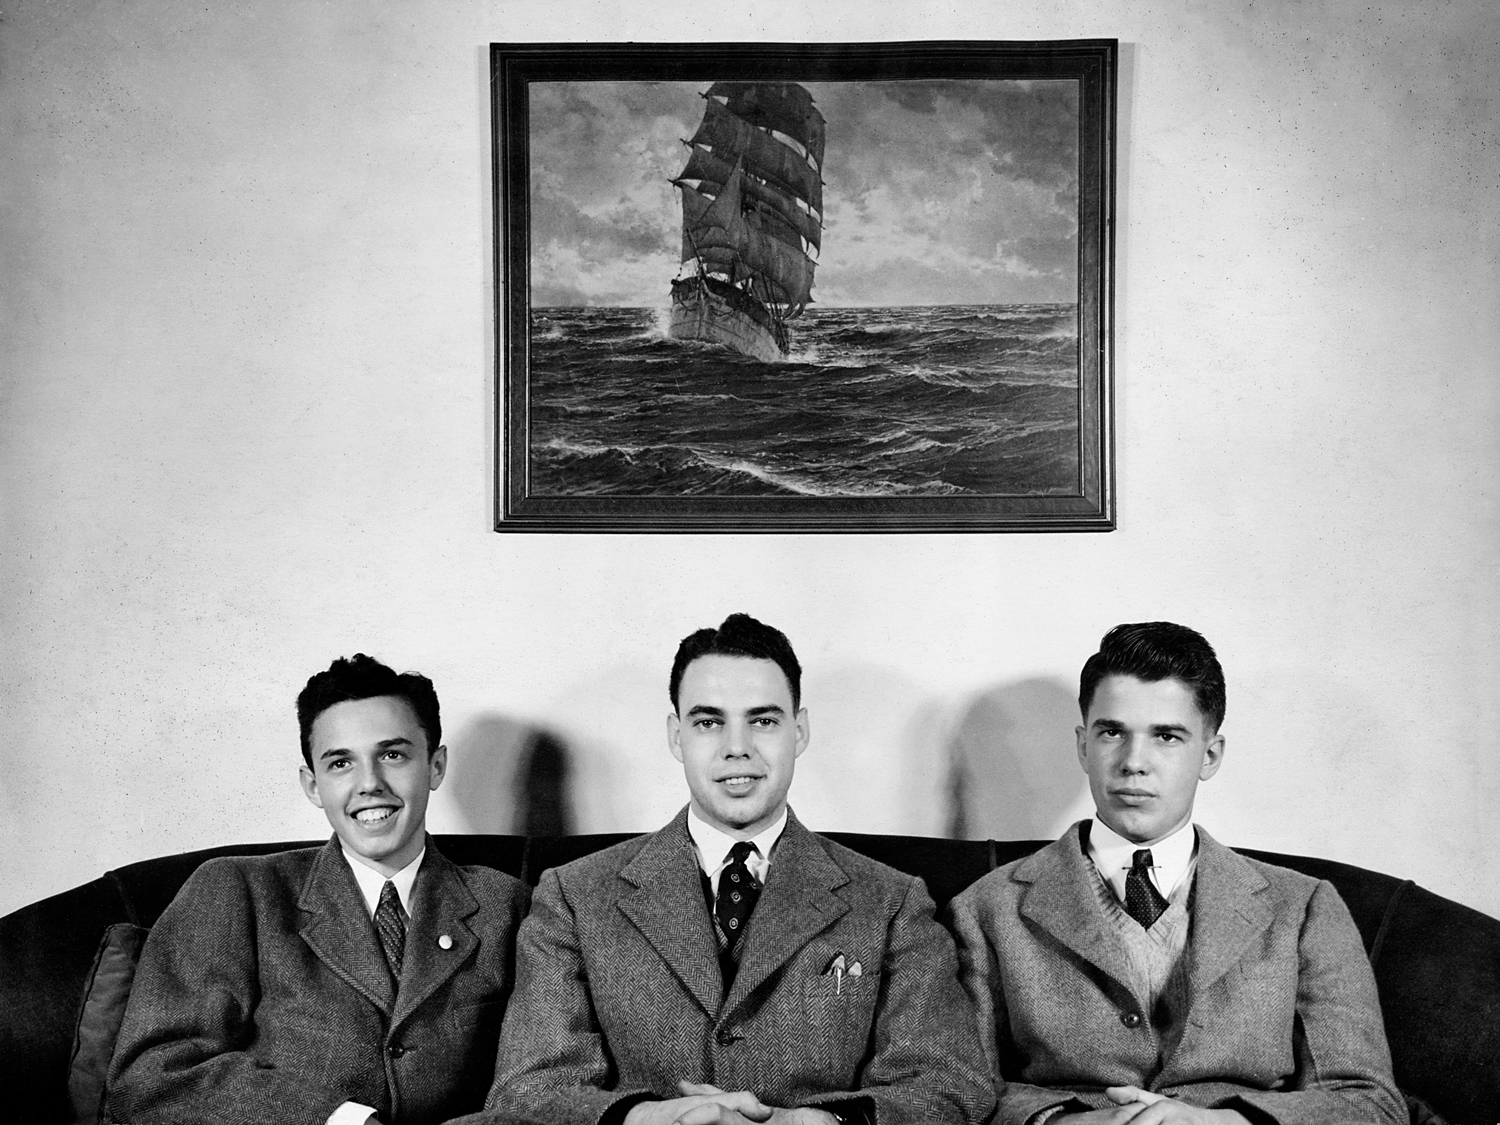 Richard, Doug and Buddy, 1942